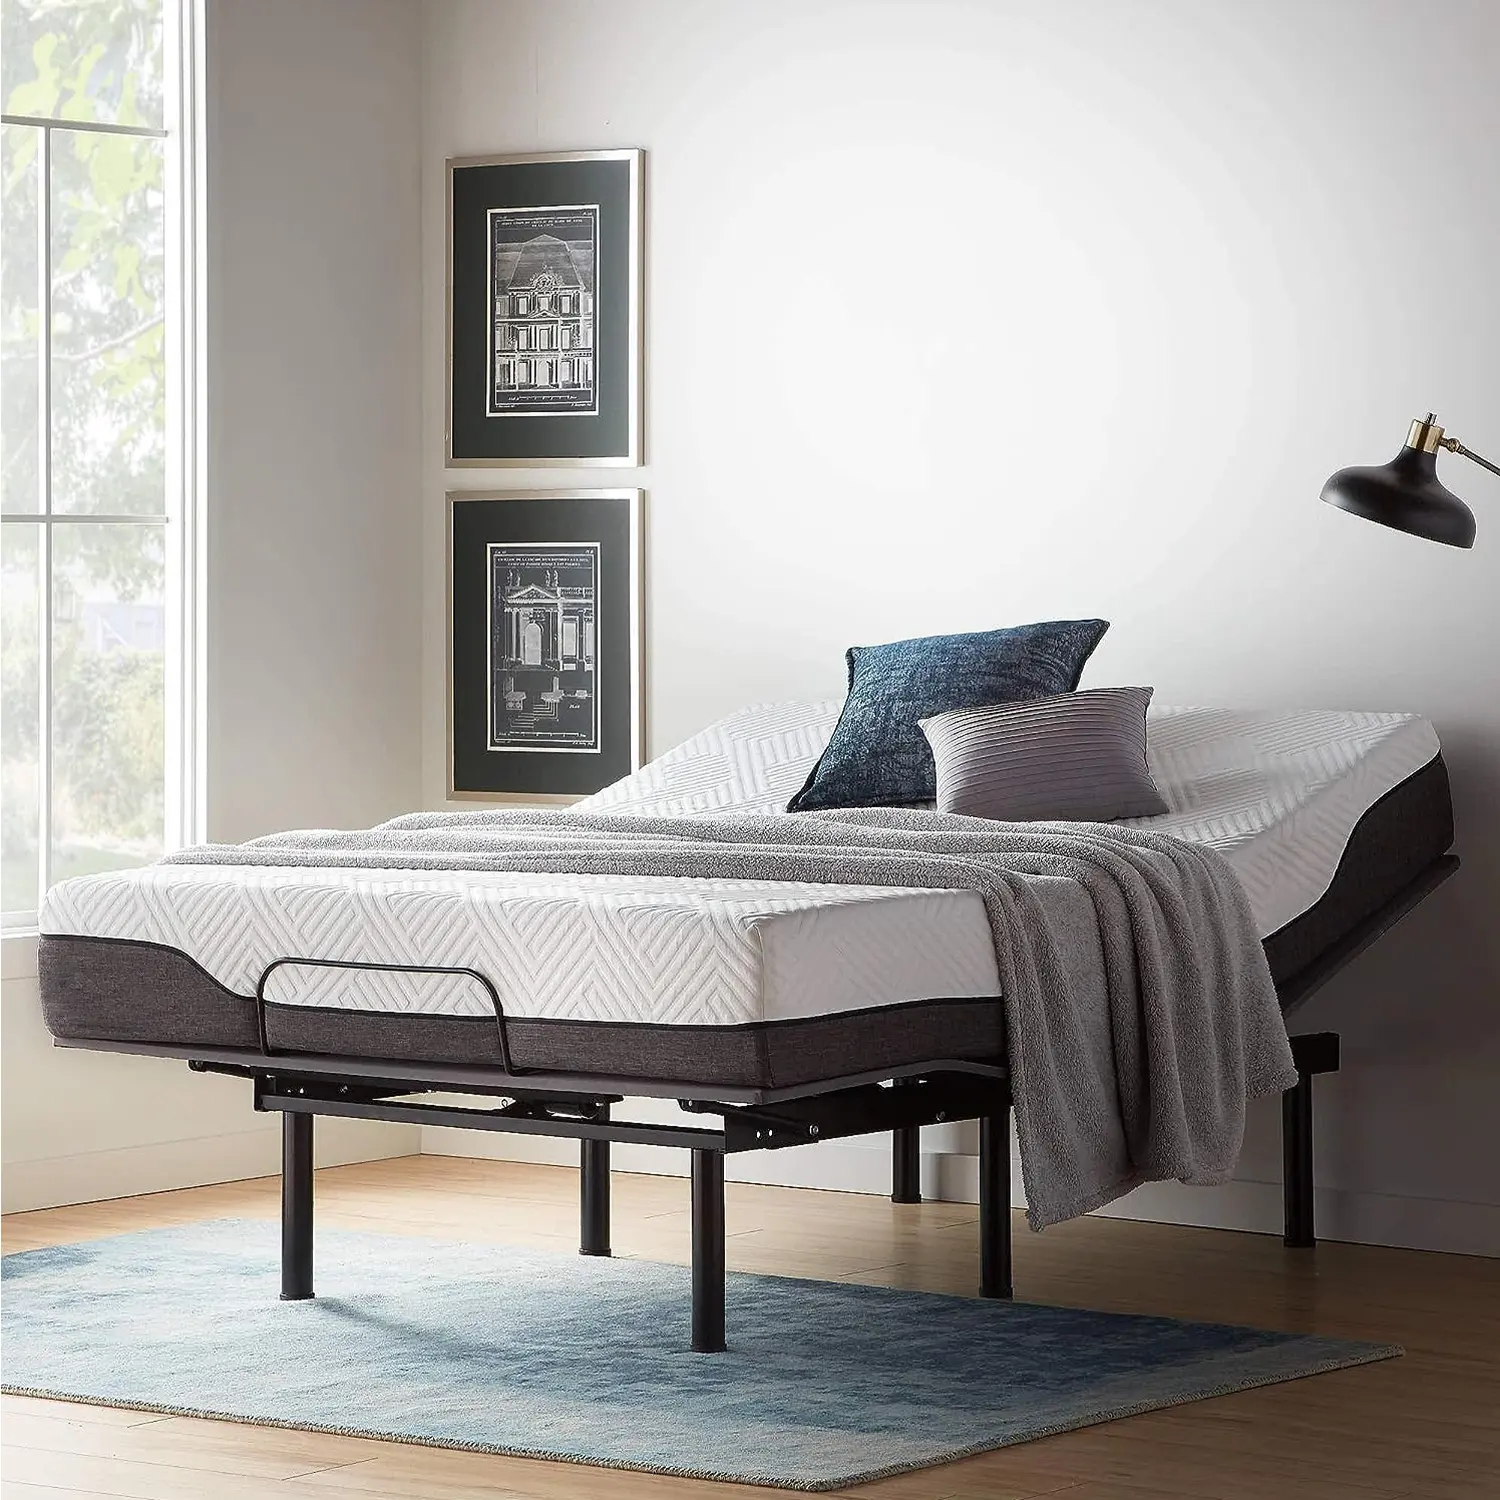 Diseño de cama moderna Camas eléctricas remotas de tamaño queen ajustables para dormitorio